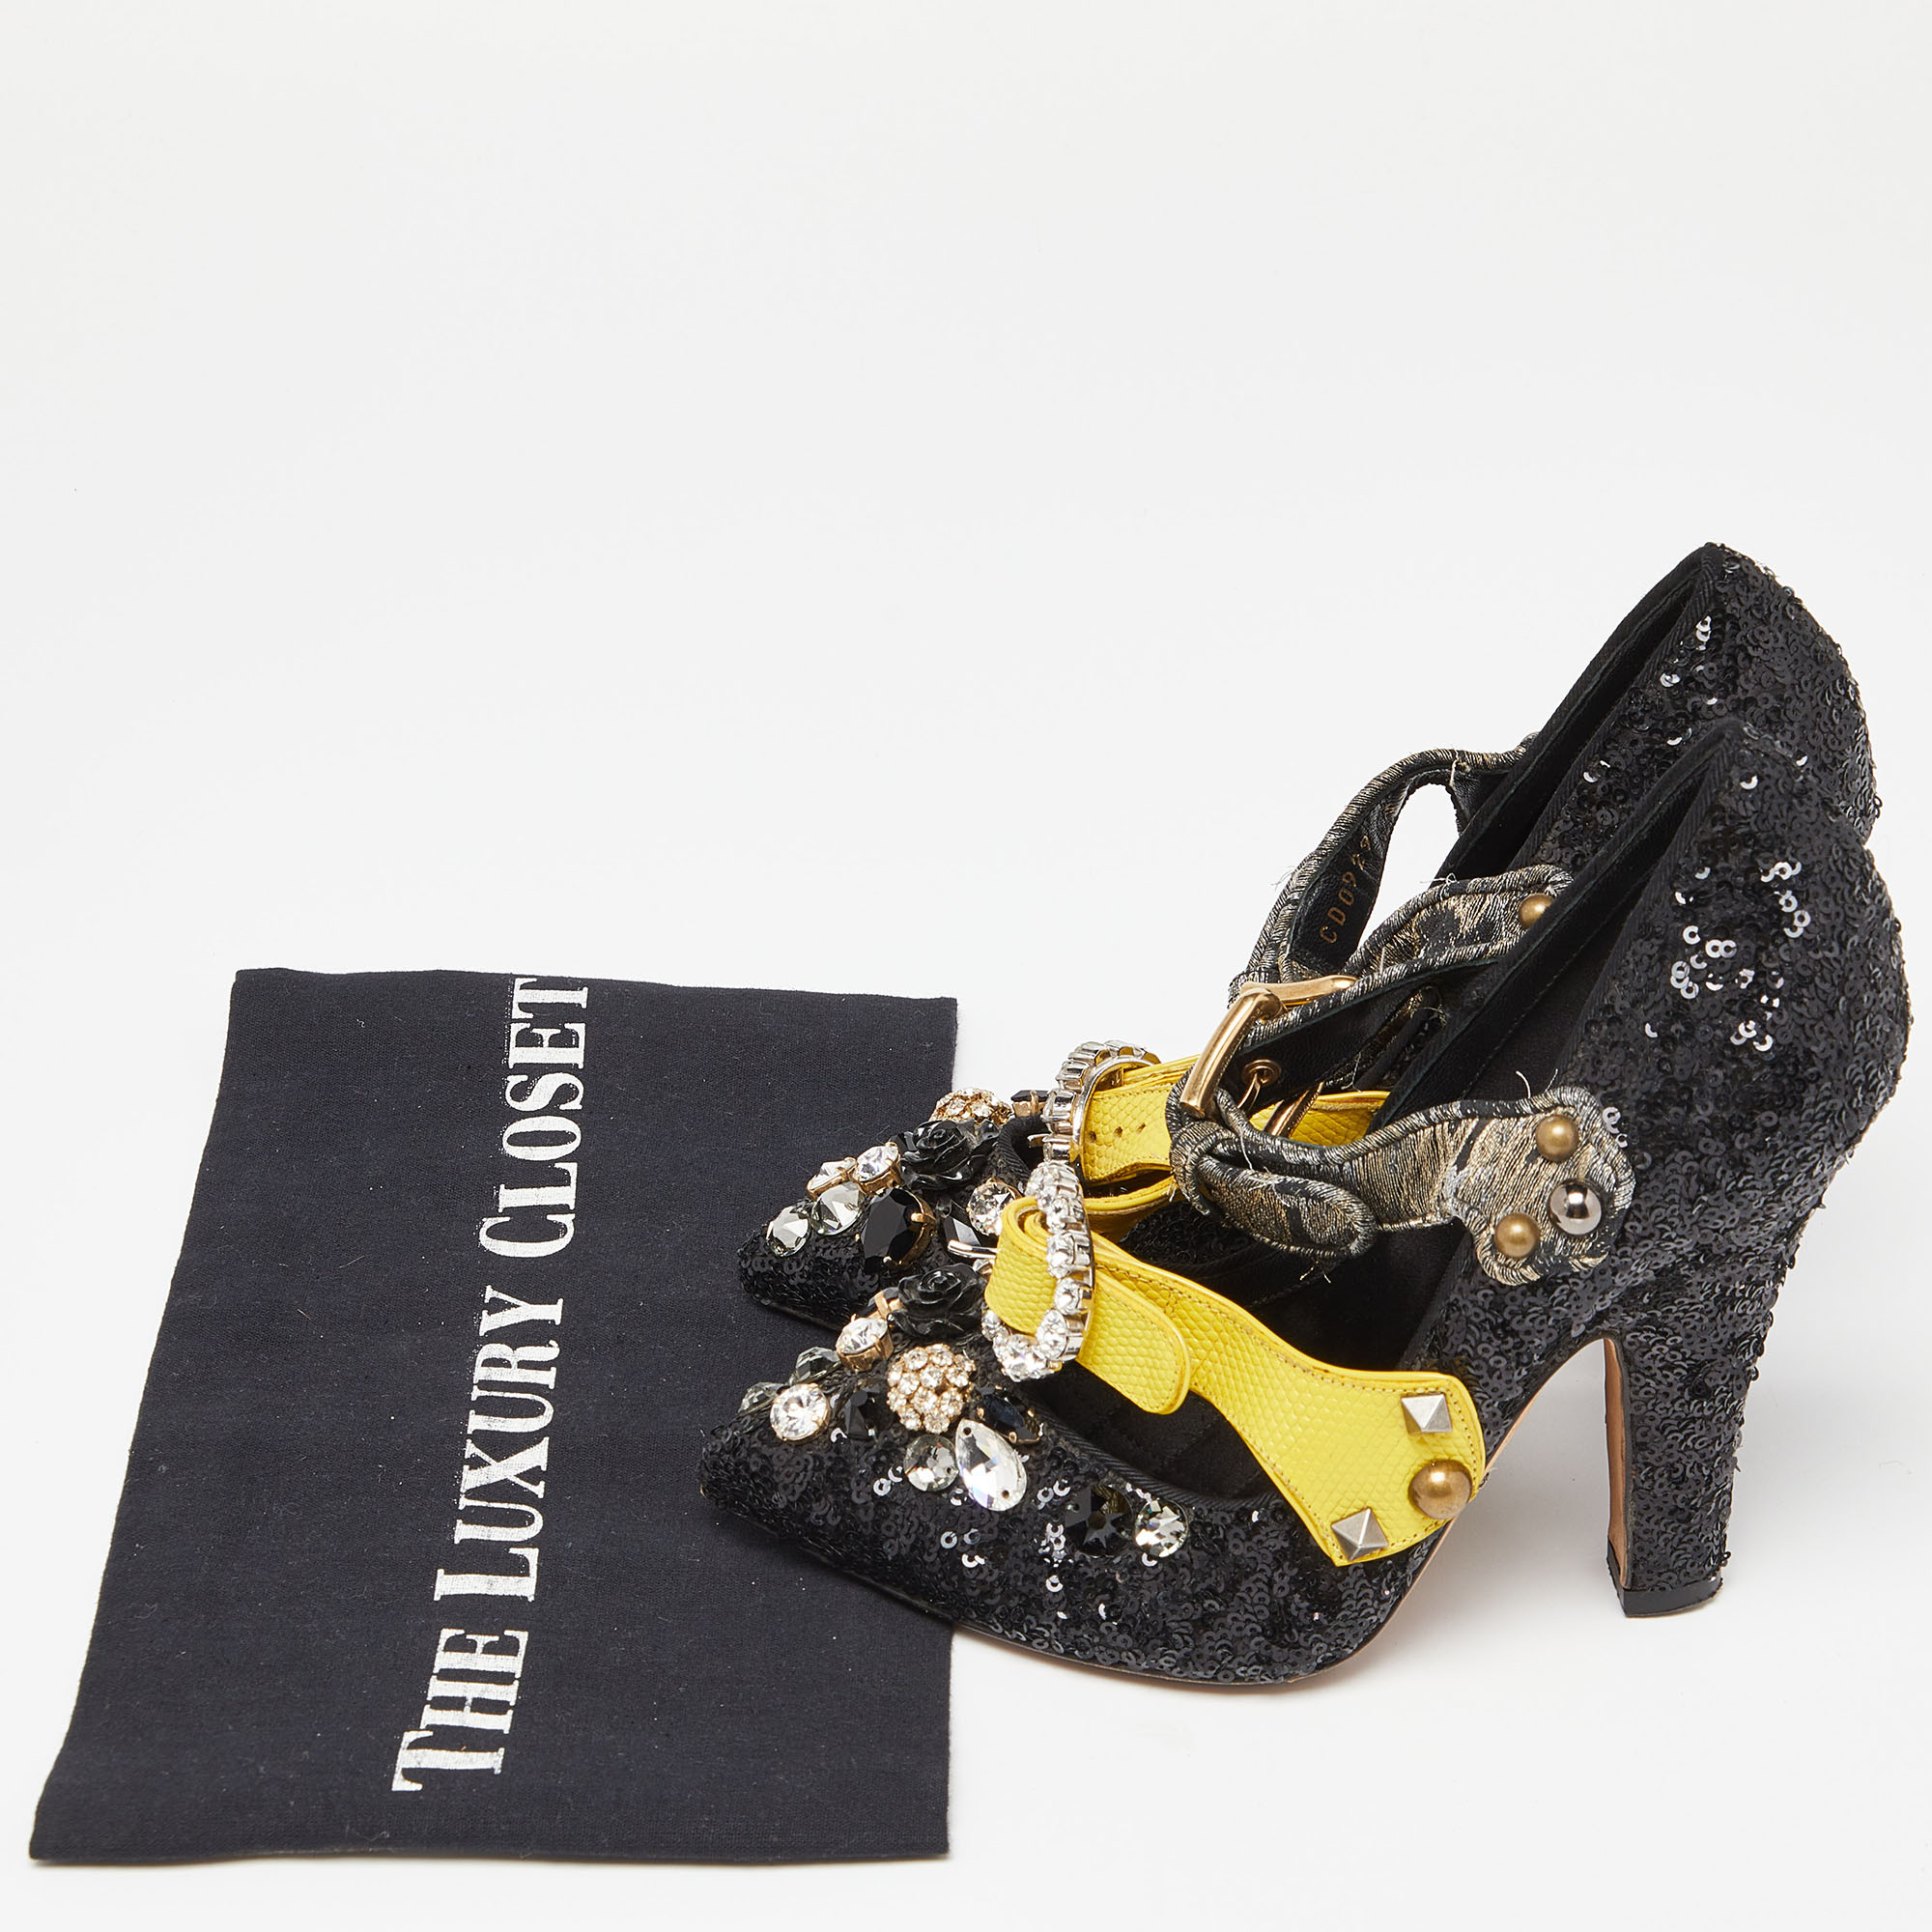 Dolce & Gabbana Black Sequins Crystal Embellished Mary Jane Pumps Size 37